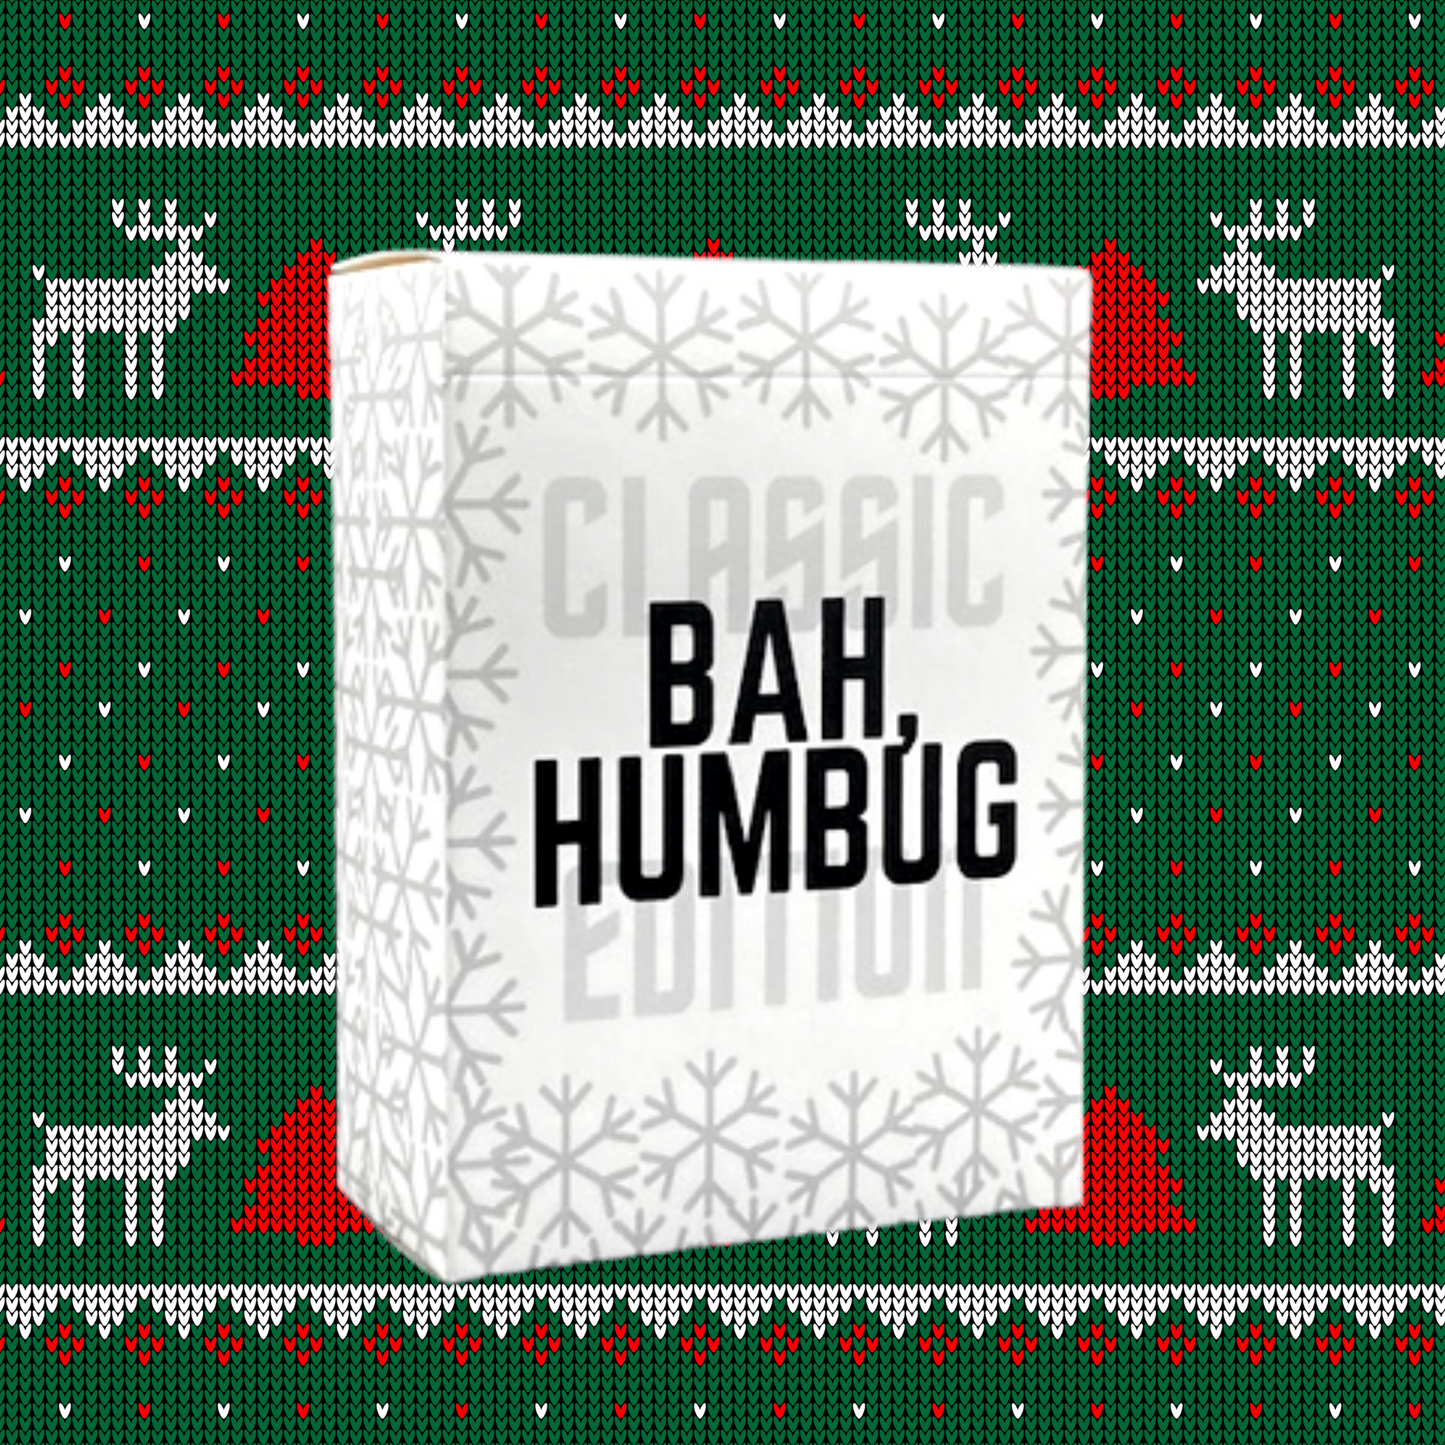 Bah Humbug: Classic Christmas Trivia